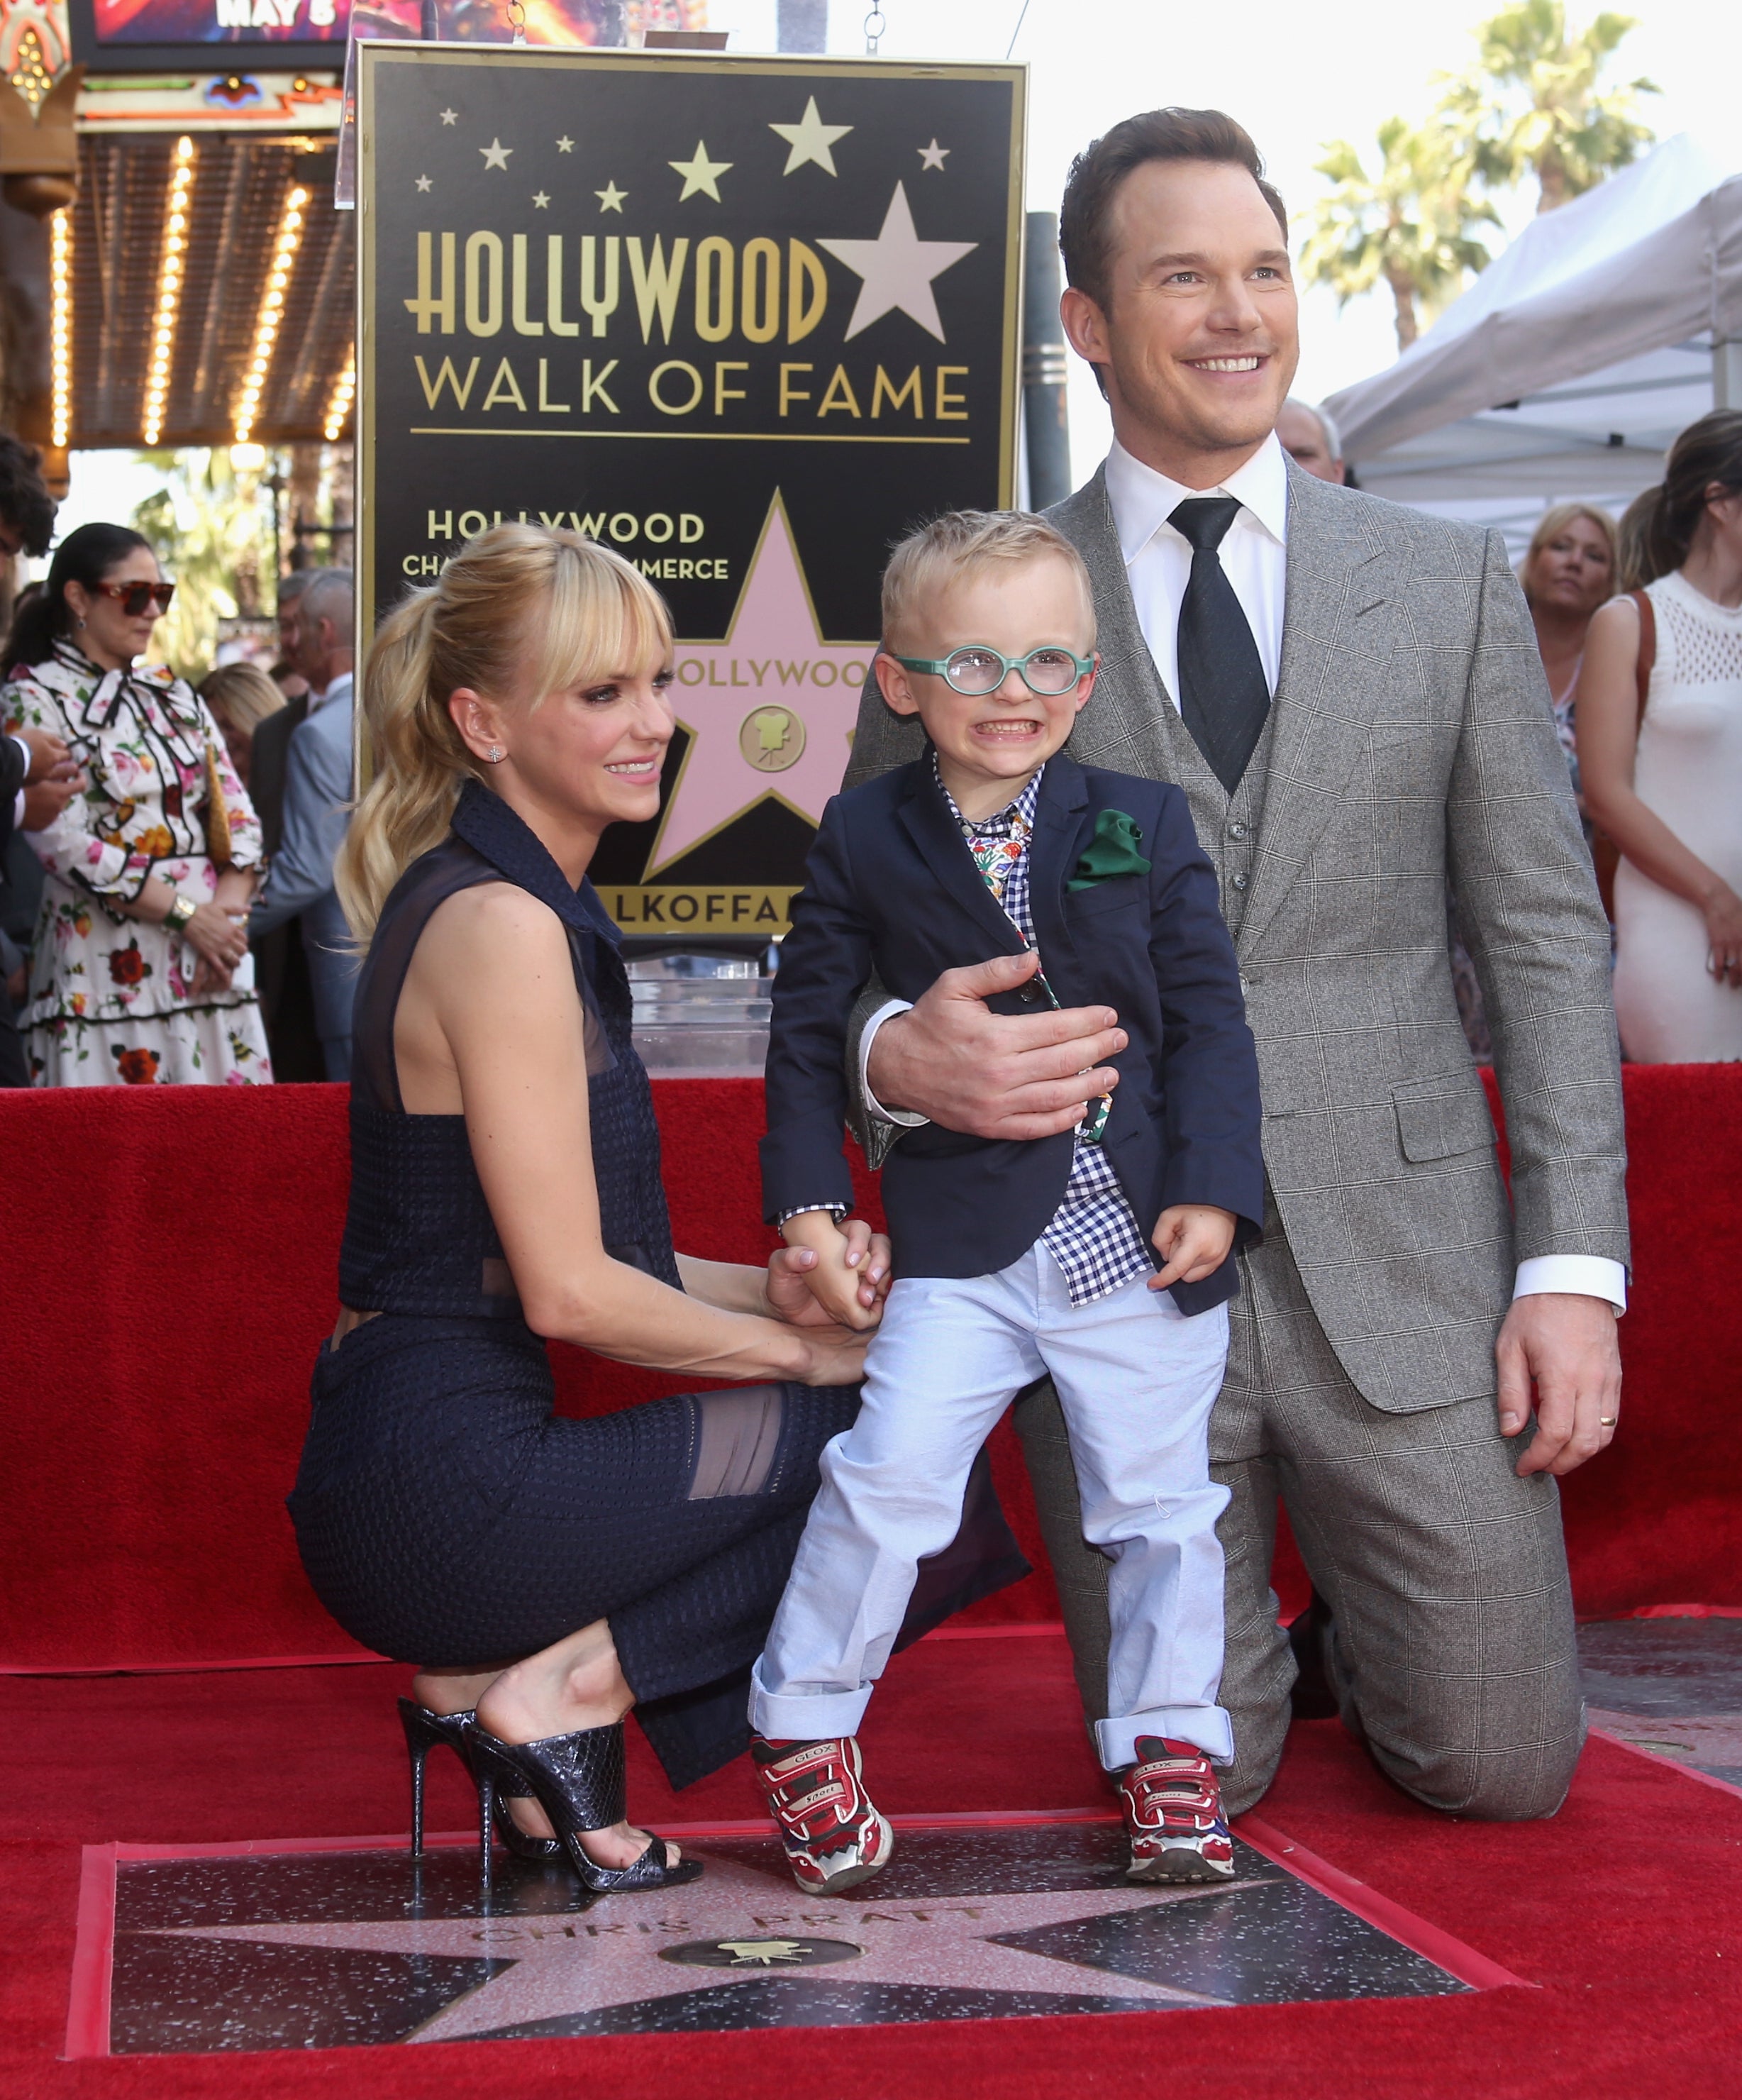 Anna Faris, Chris Pratt, and their son, Jack